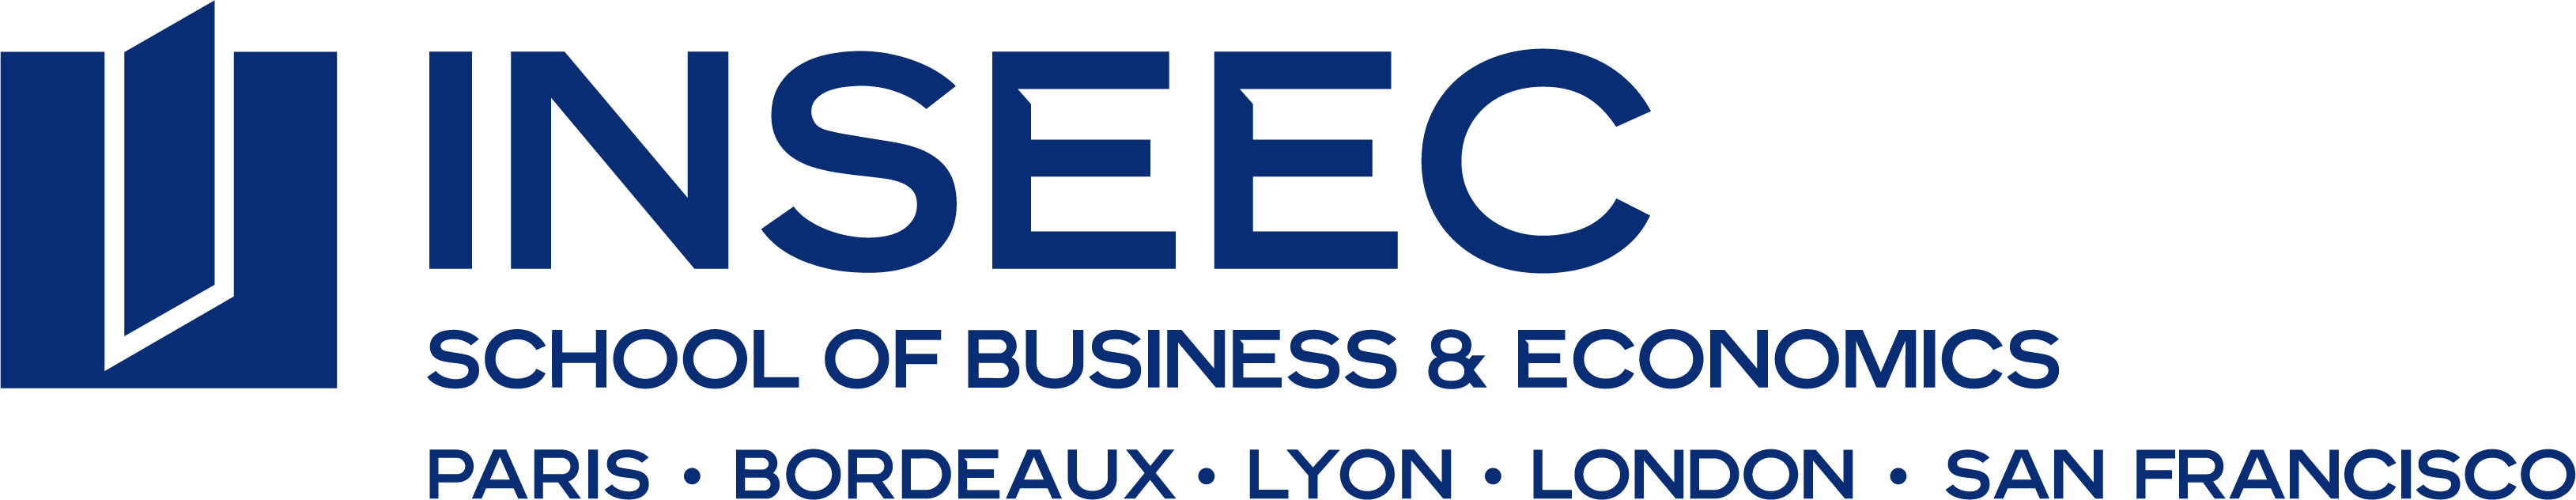 INSEEC School of Business & Economics French Tech Bordeaux